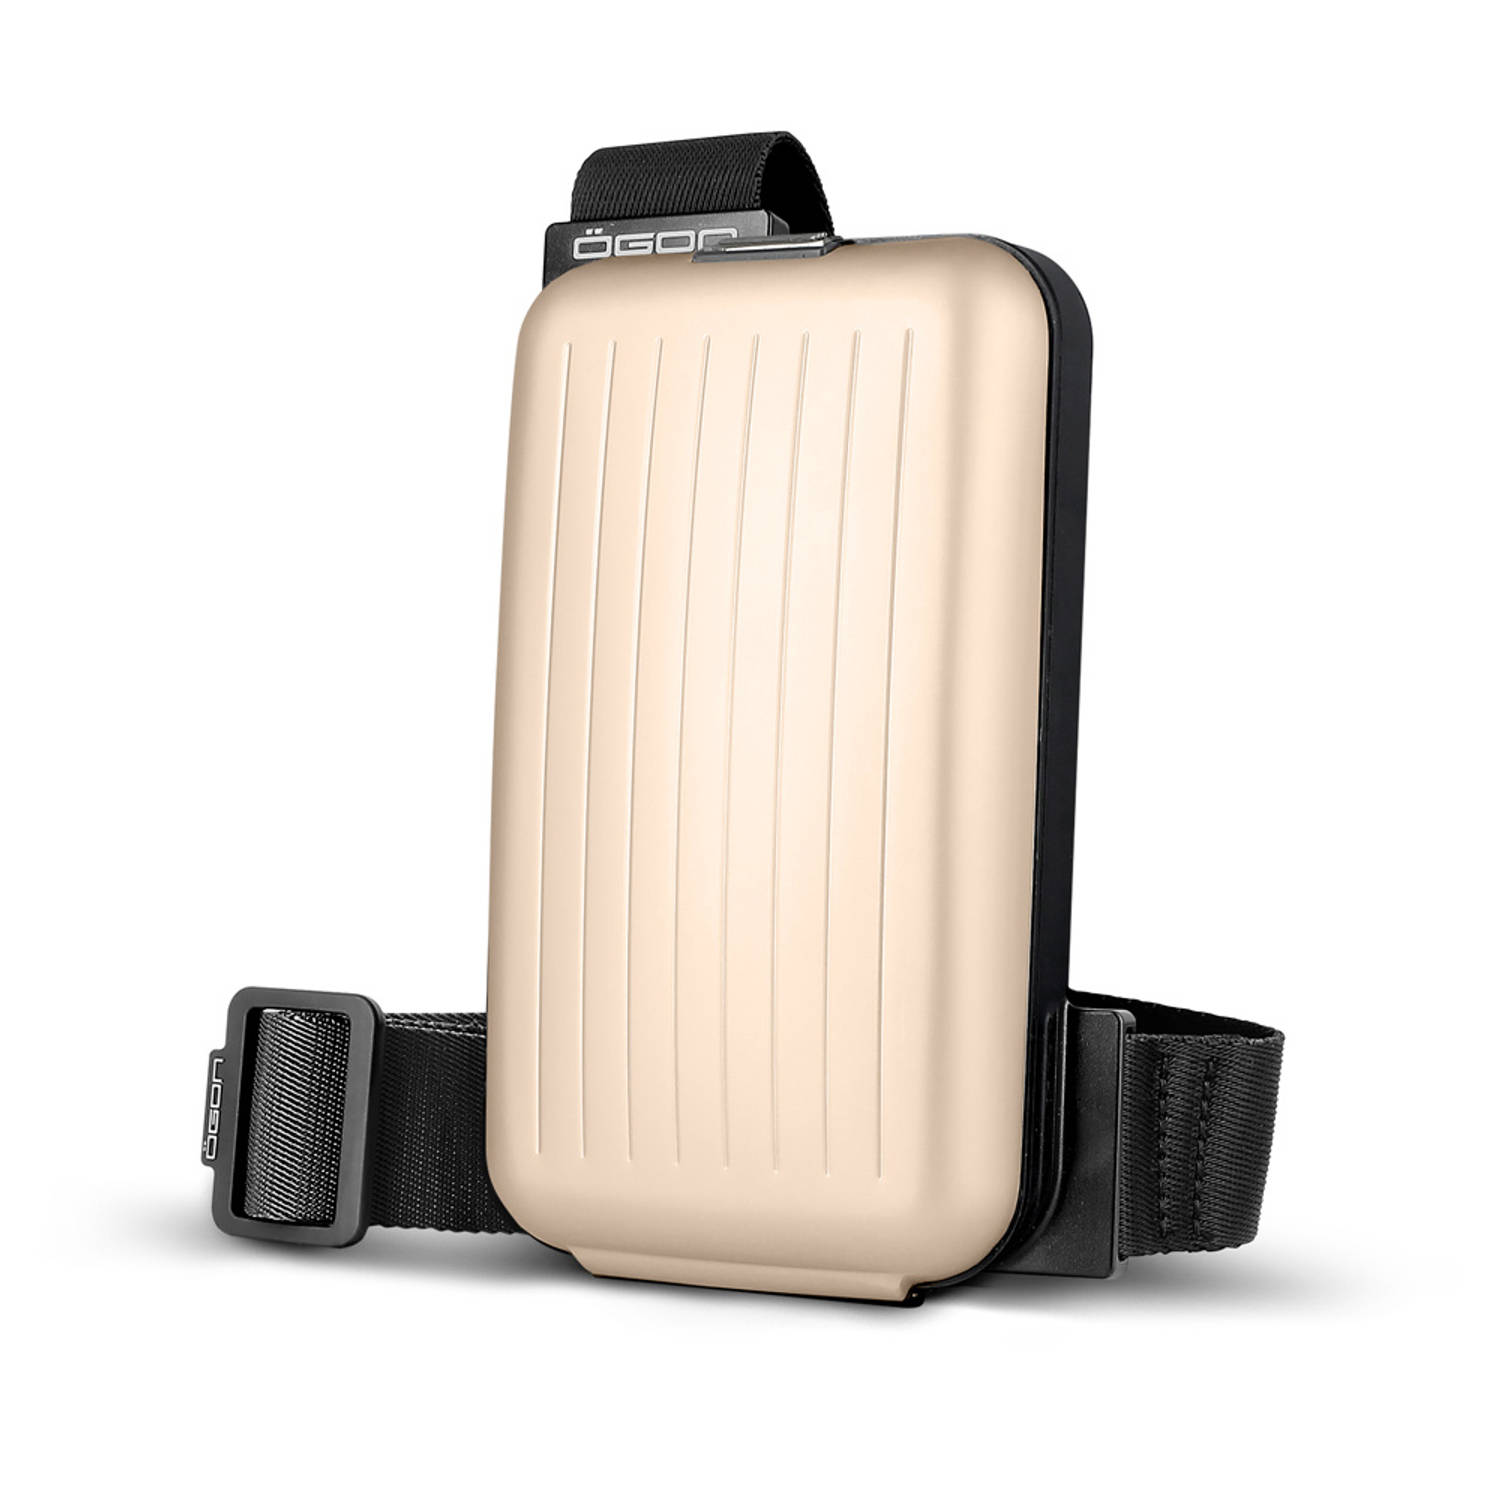 Ögon Designs Phone Bag Aluminium Telefoontas - Sling Bag - Rosé Goud